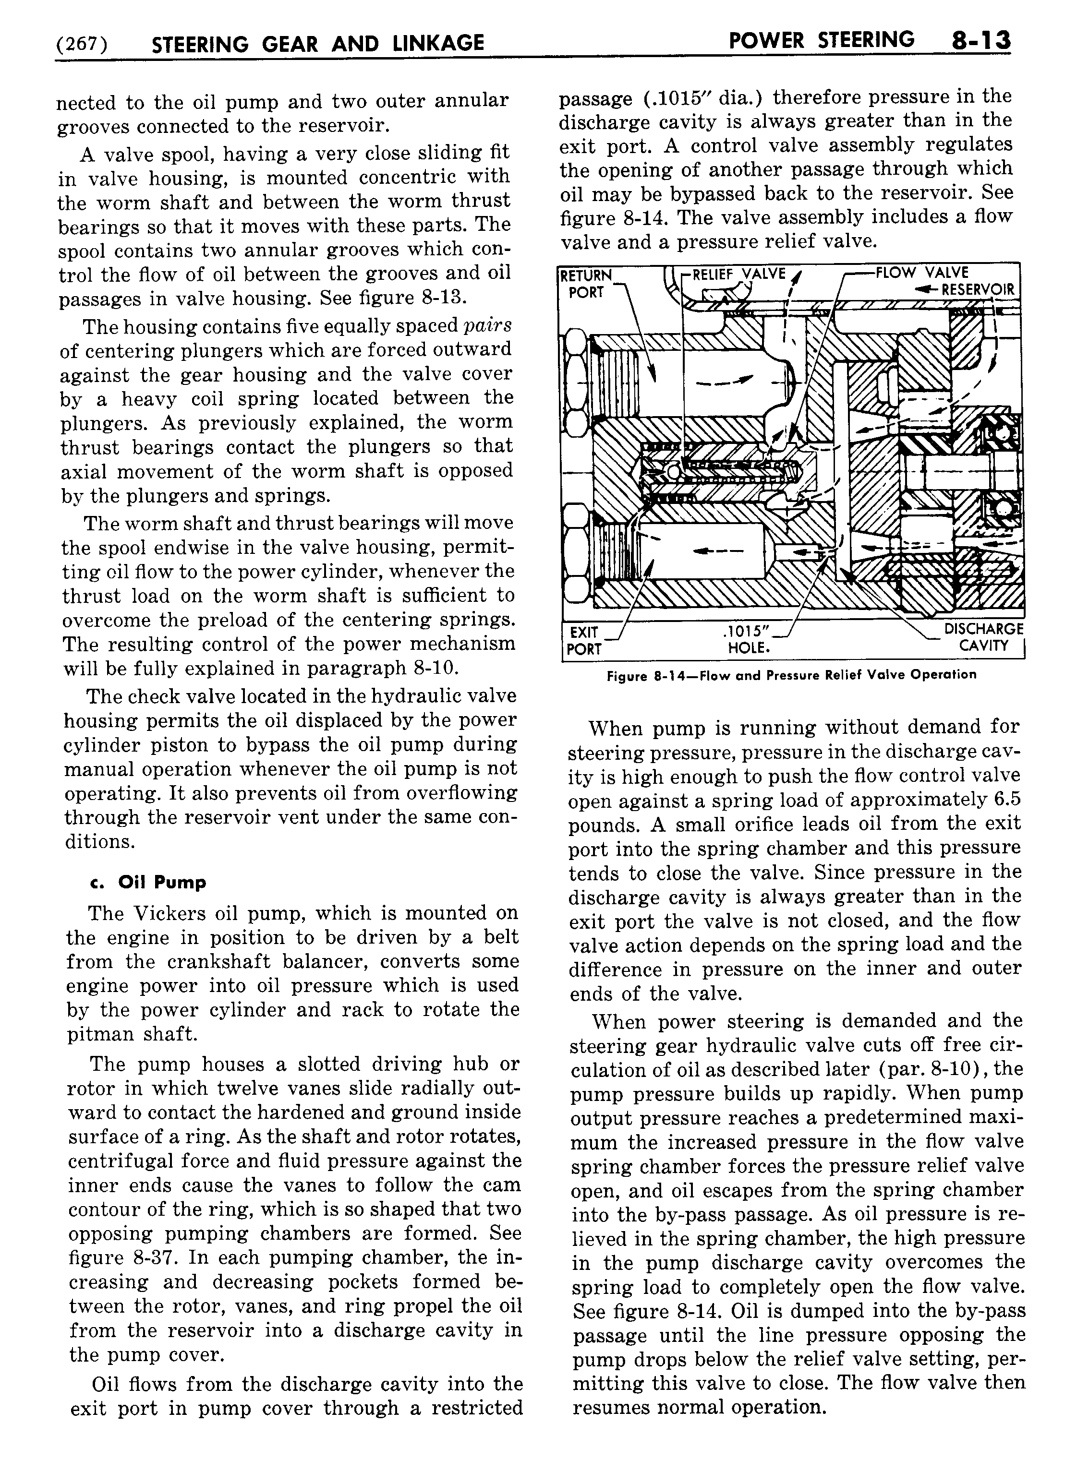 n_09 1954 Buick Shop Manual - Steering-013-013.jpg